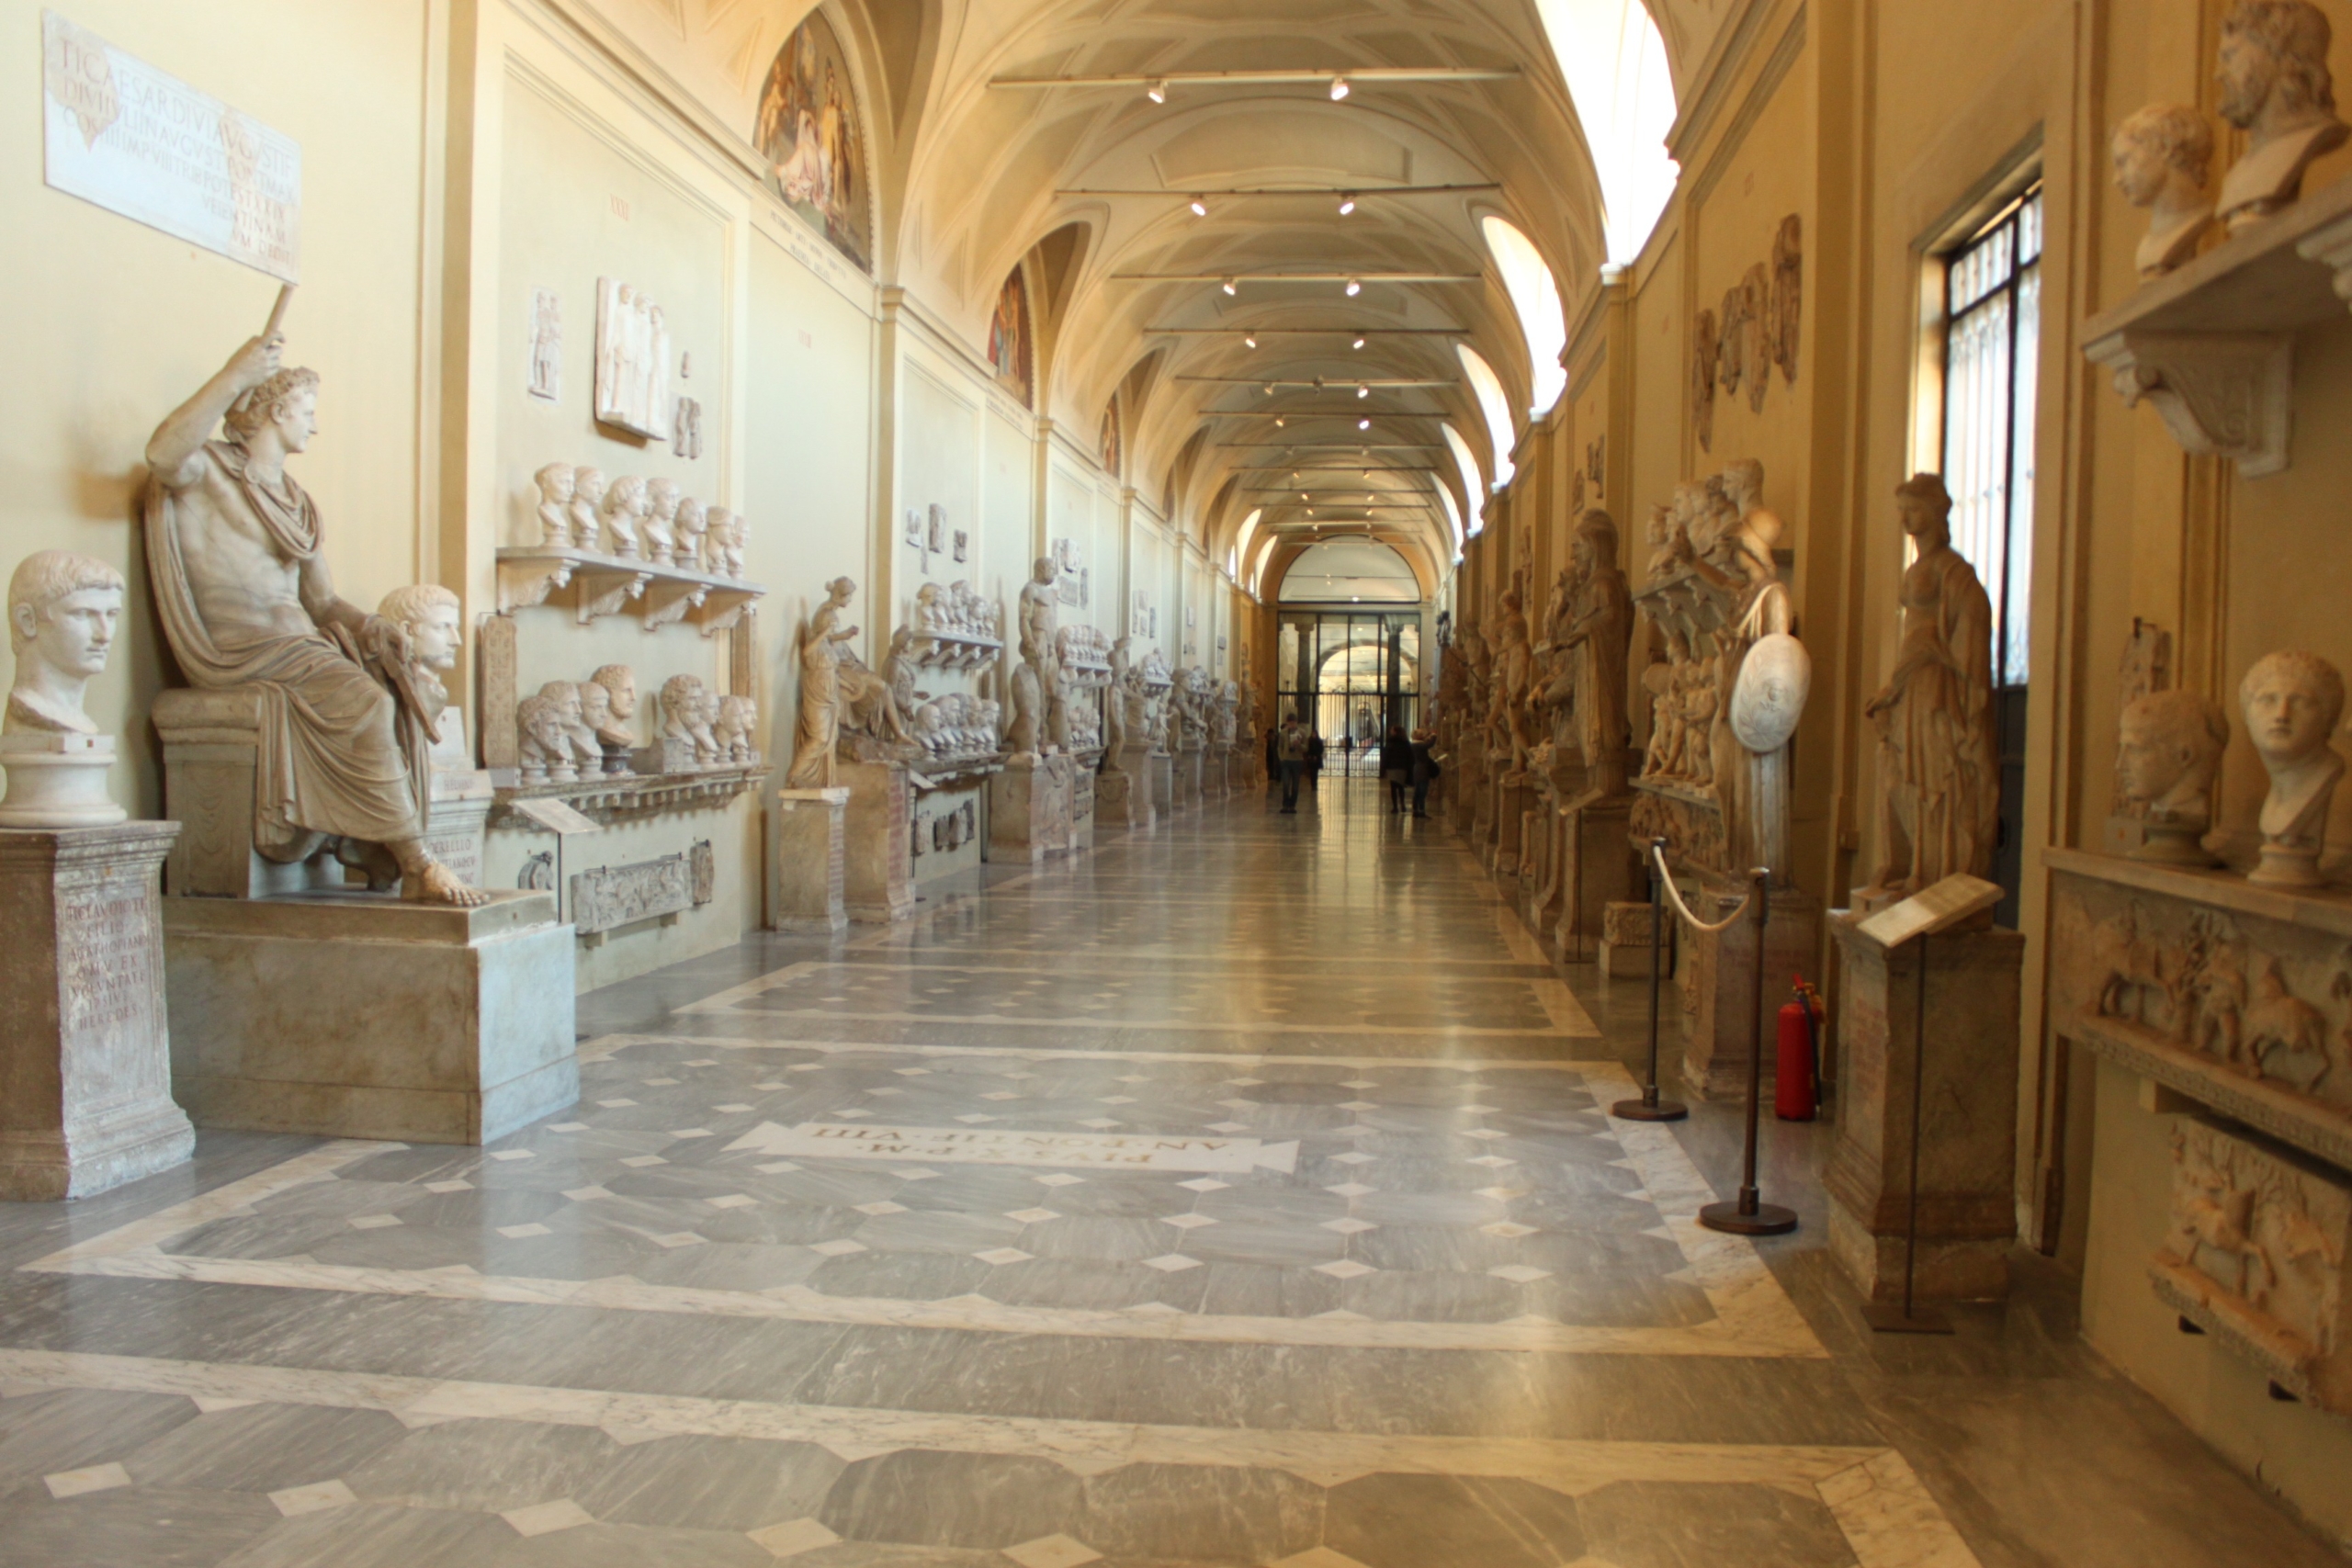 Post precedente: Concorso per musei e biblioteche a Roma: ecco i dettagli